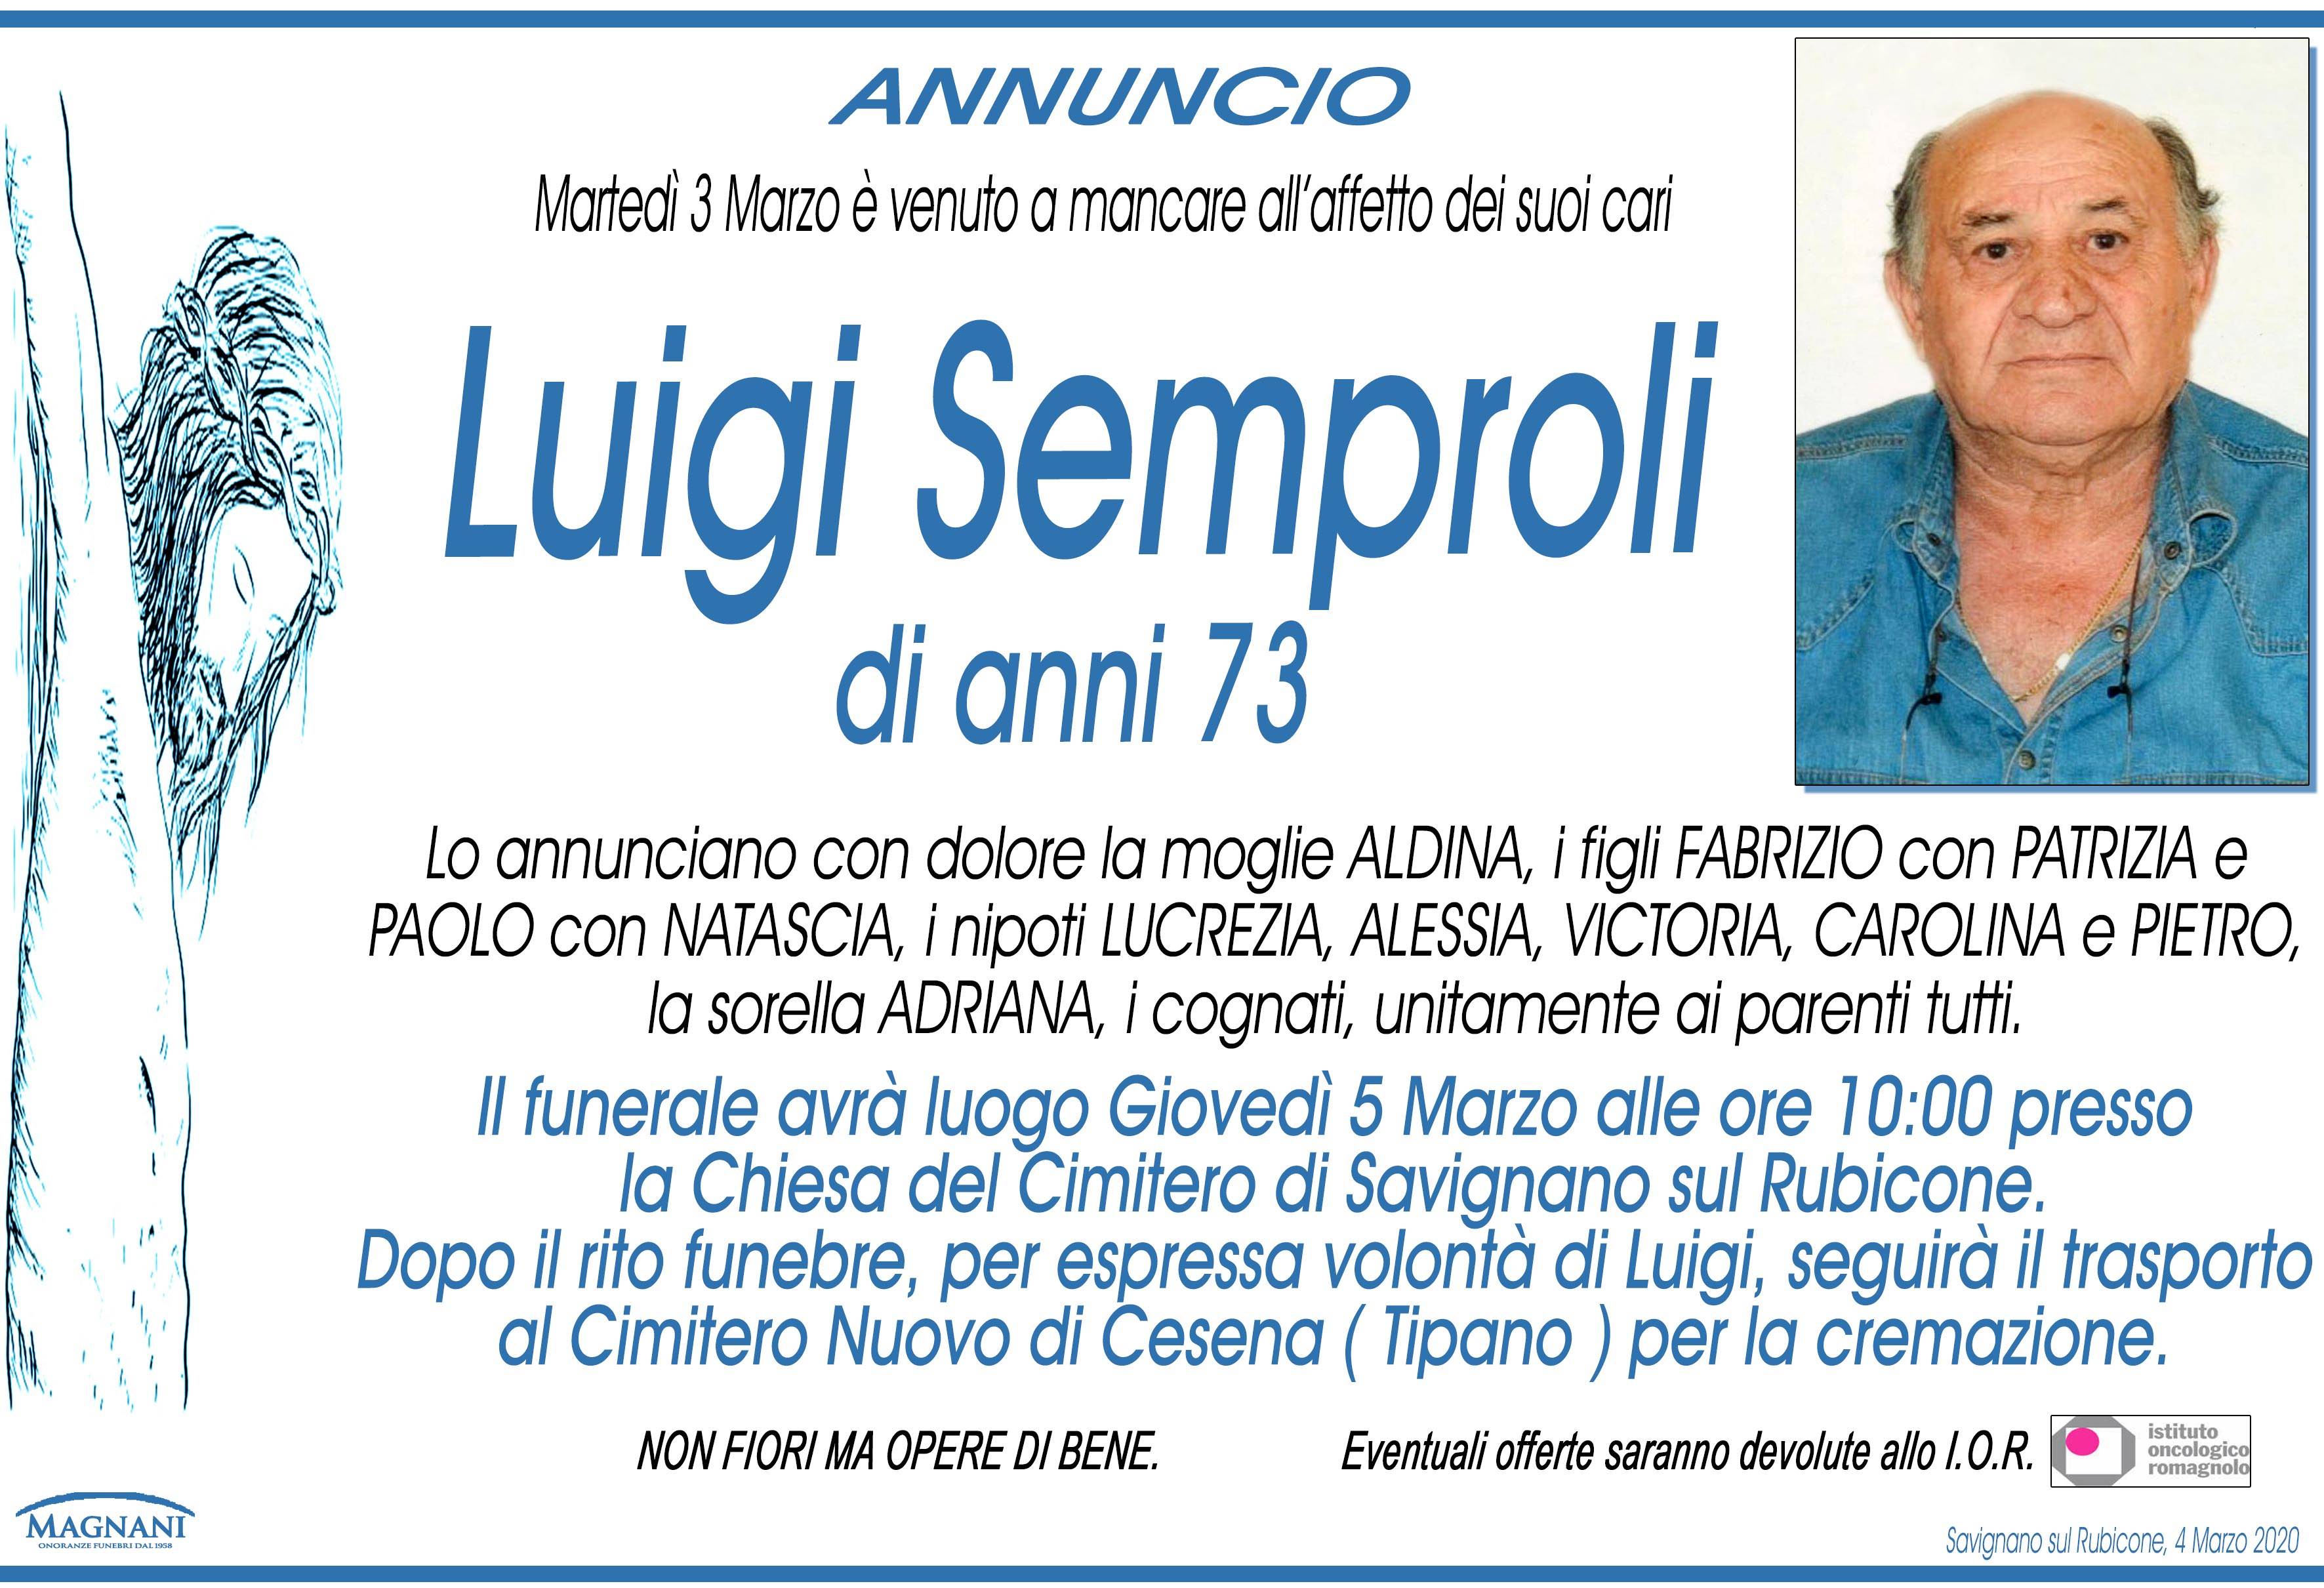 Luigi Semproli